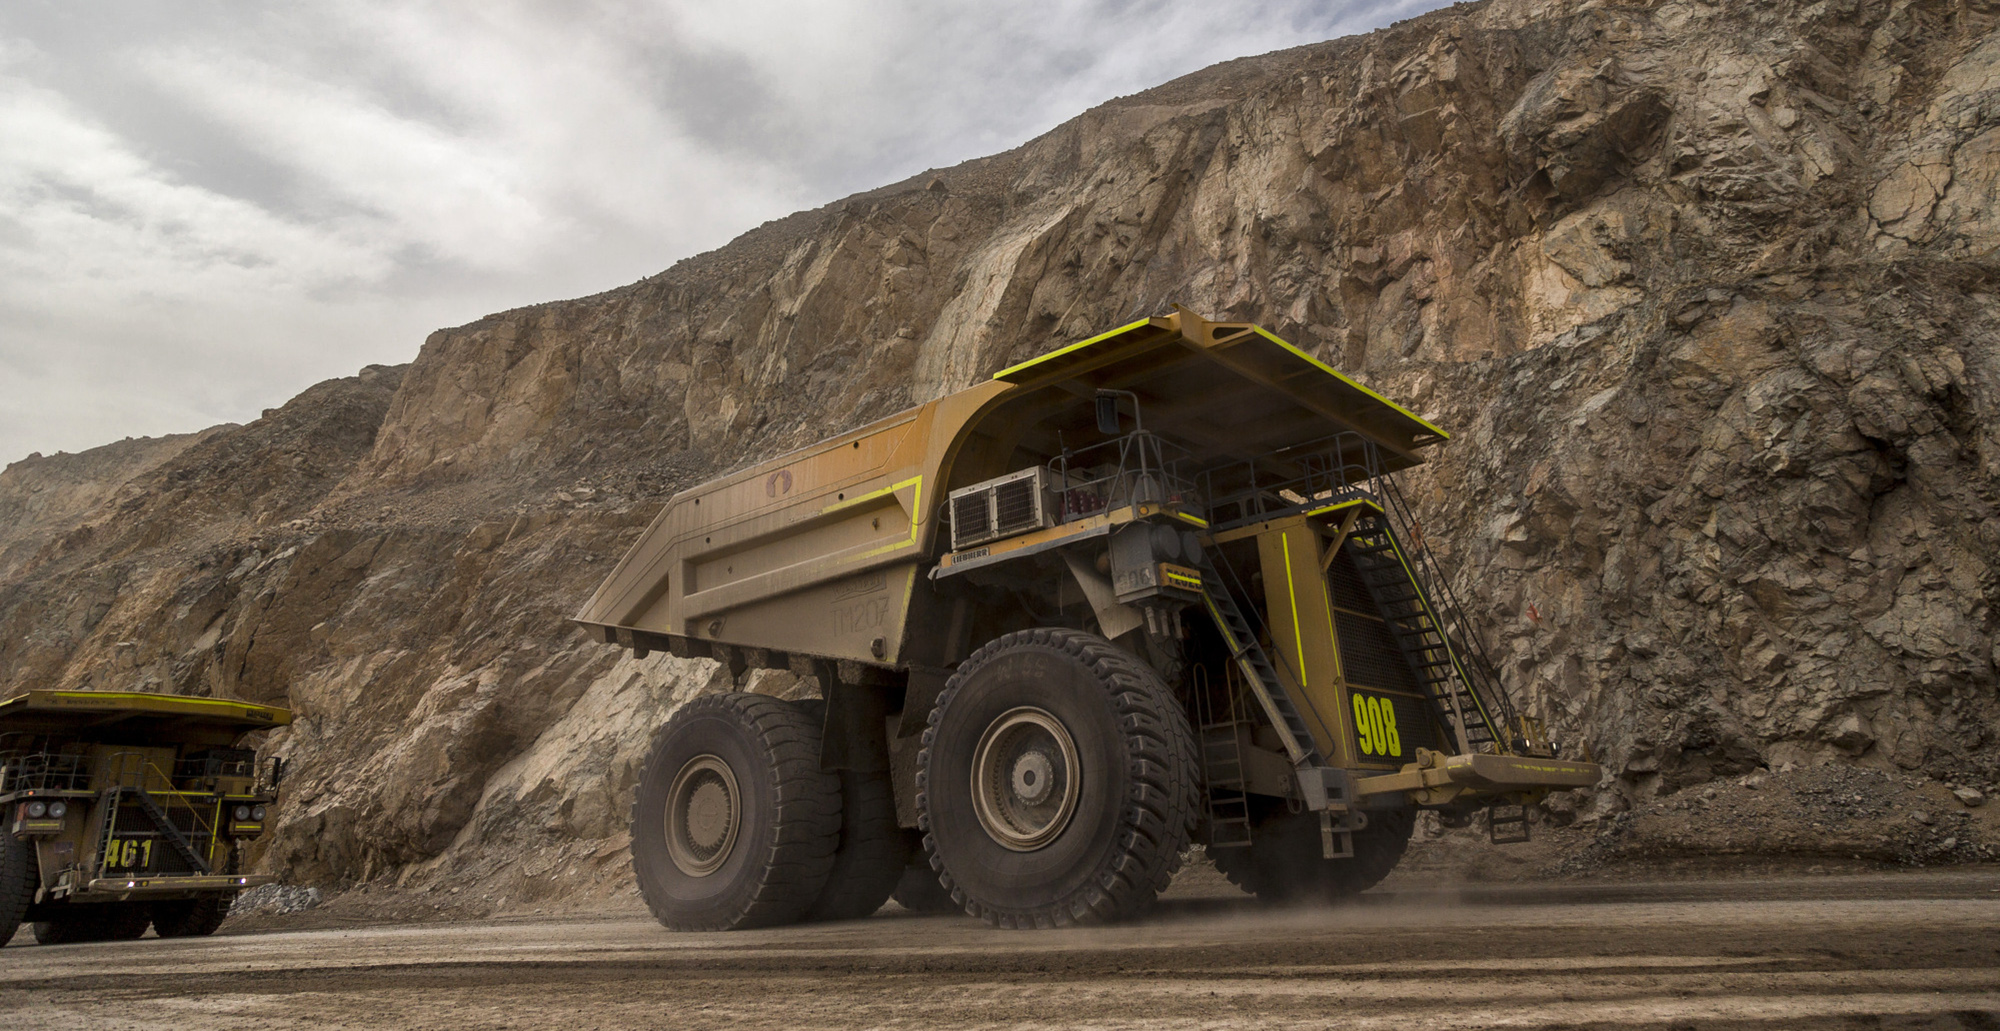 Trucks transport minerals inside the Codelco Chuquicamata open pit copper mine near Calama, Chile.